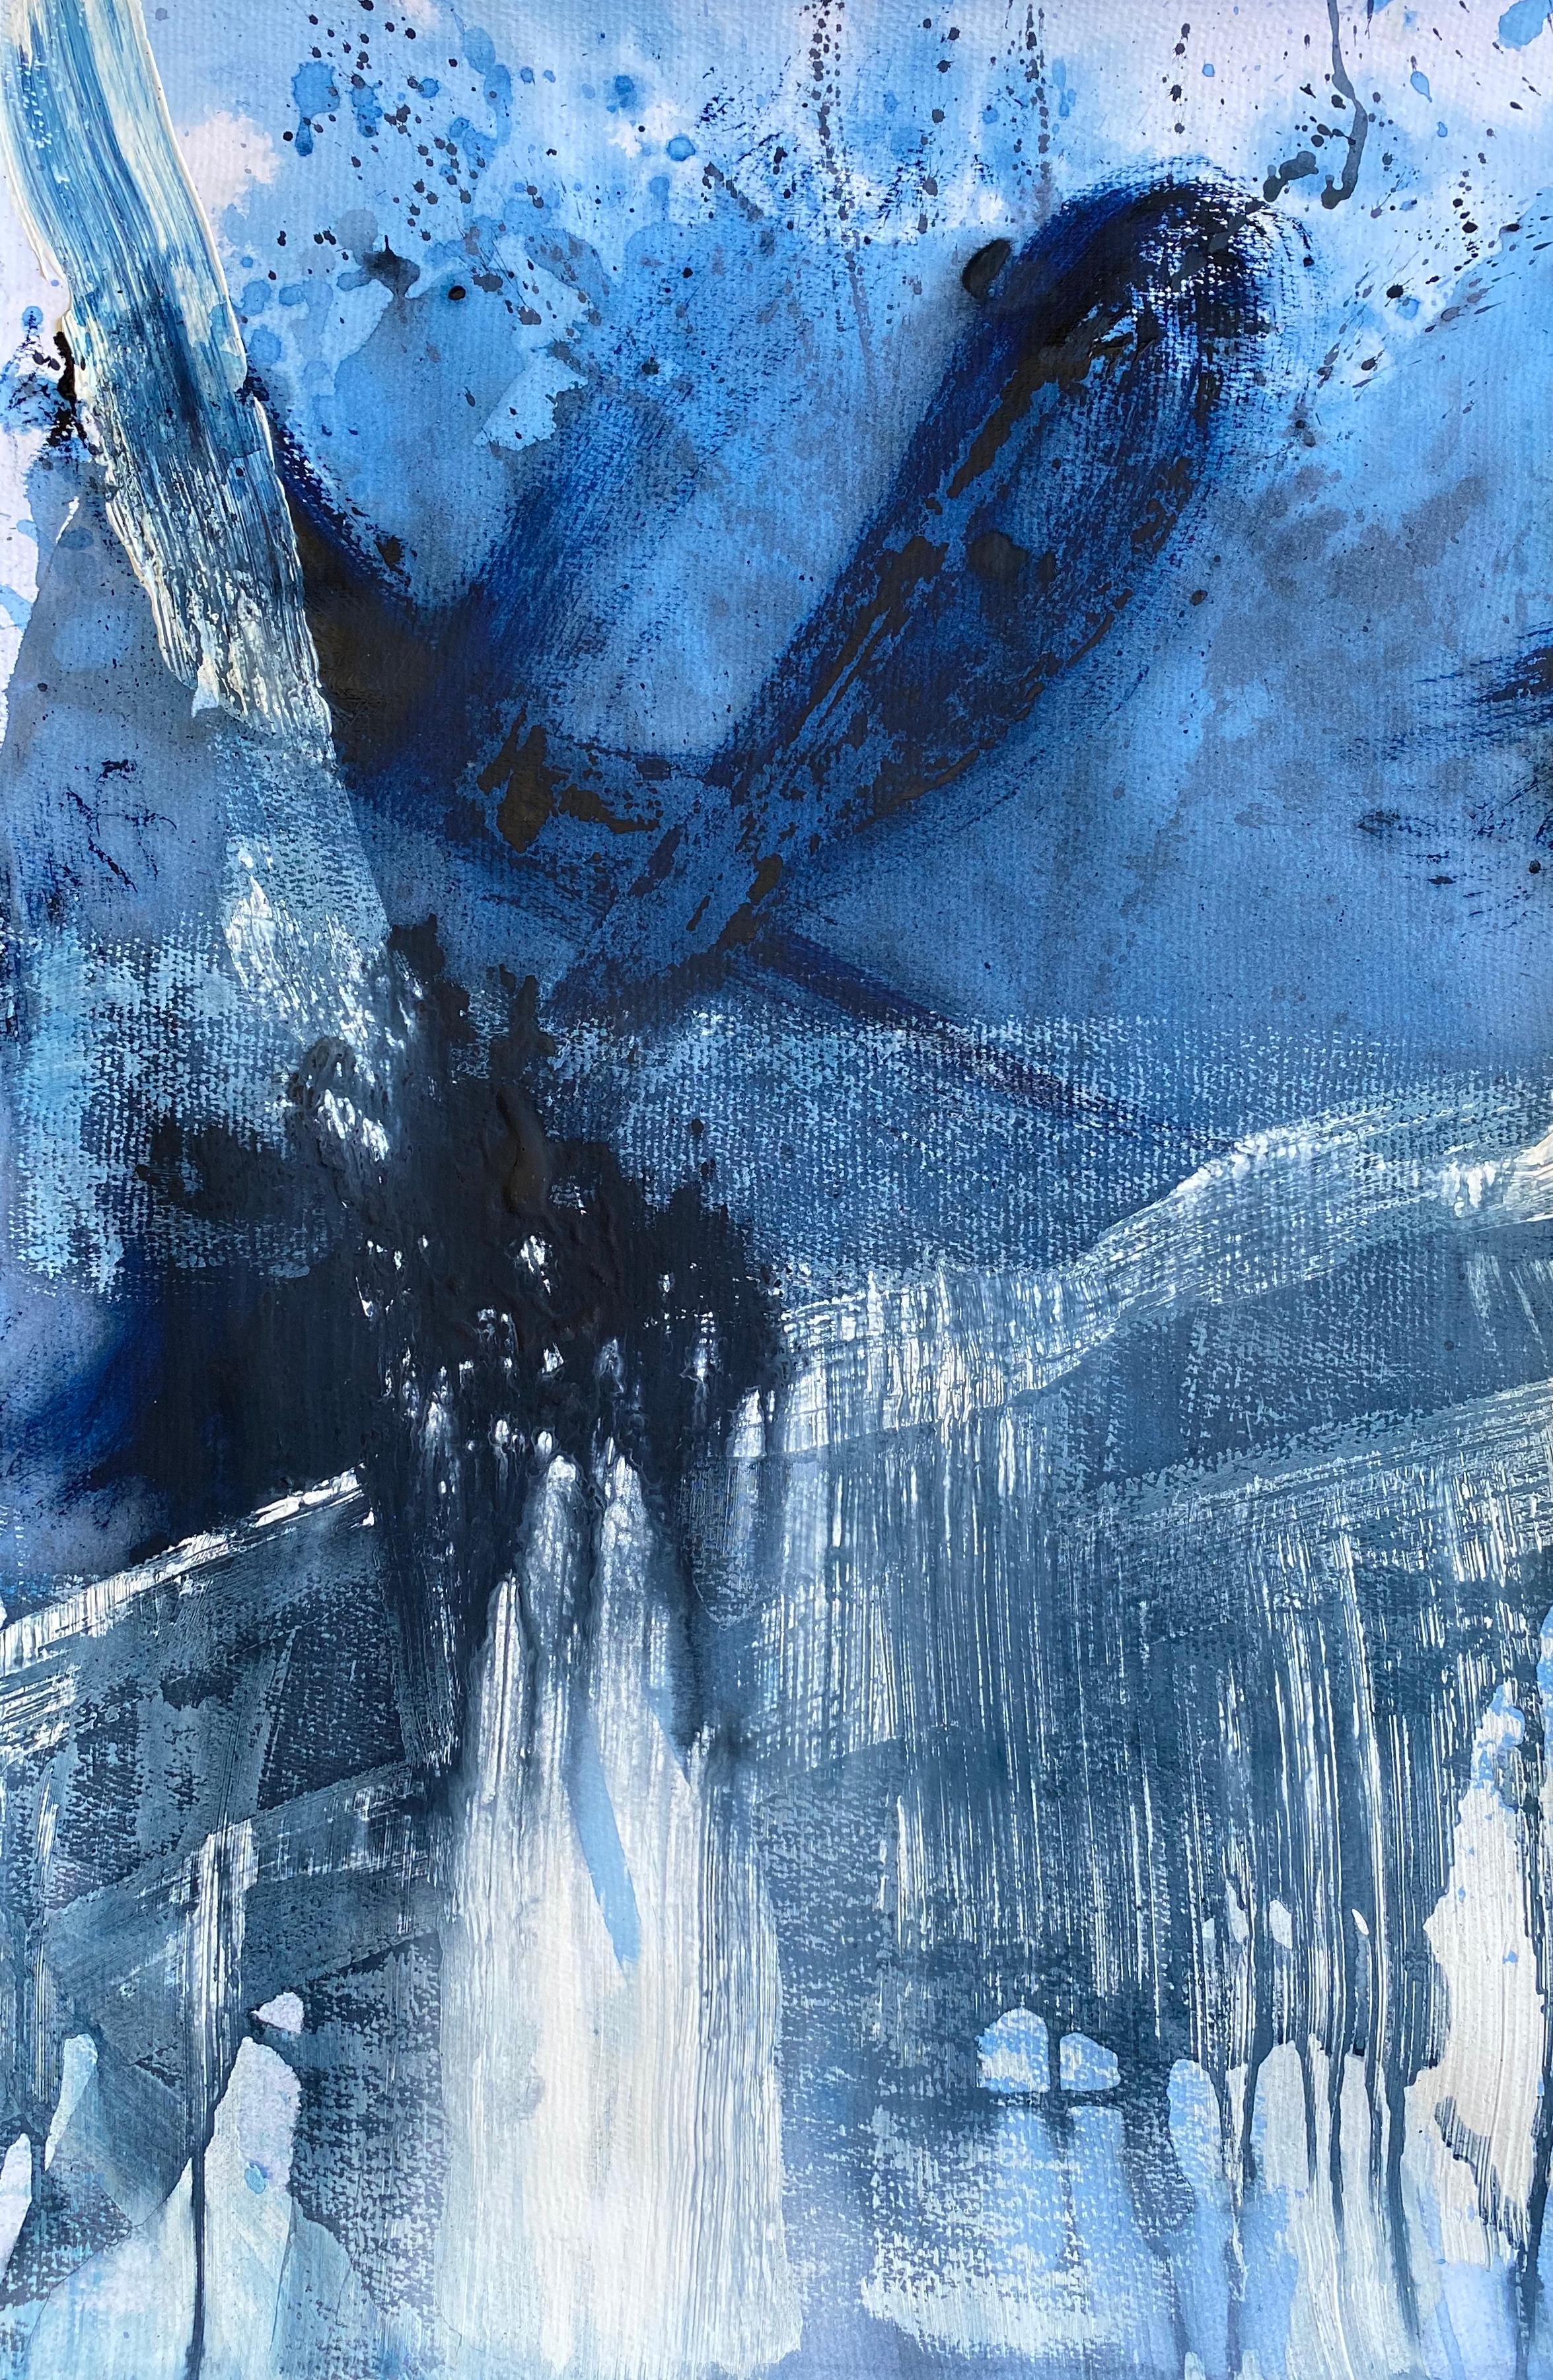 Kathleen Rhee Abstract Painting – Abstraktes abstraktes expressionistisches Gemälde in Blau und Weiß Nr. 3 auf Papier